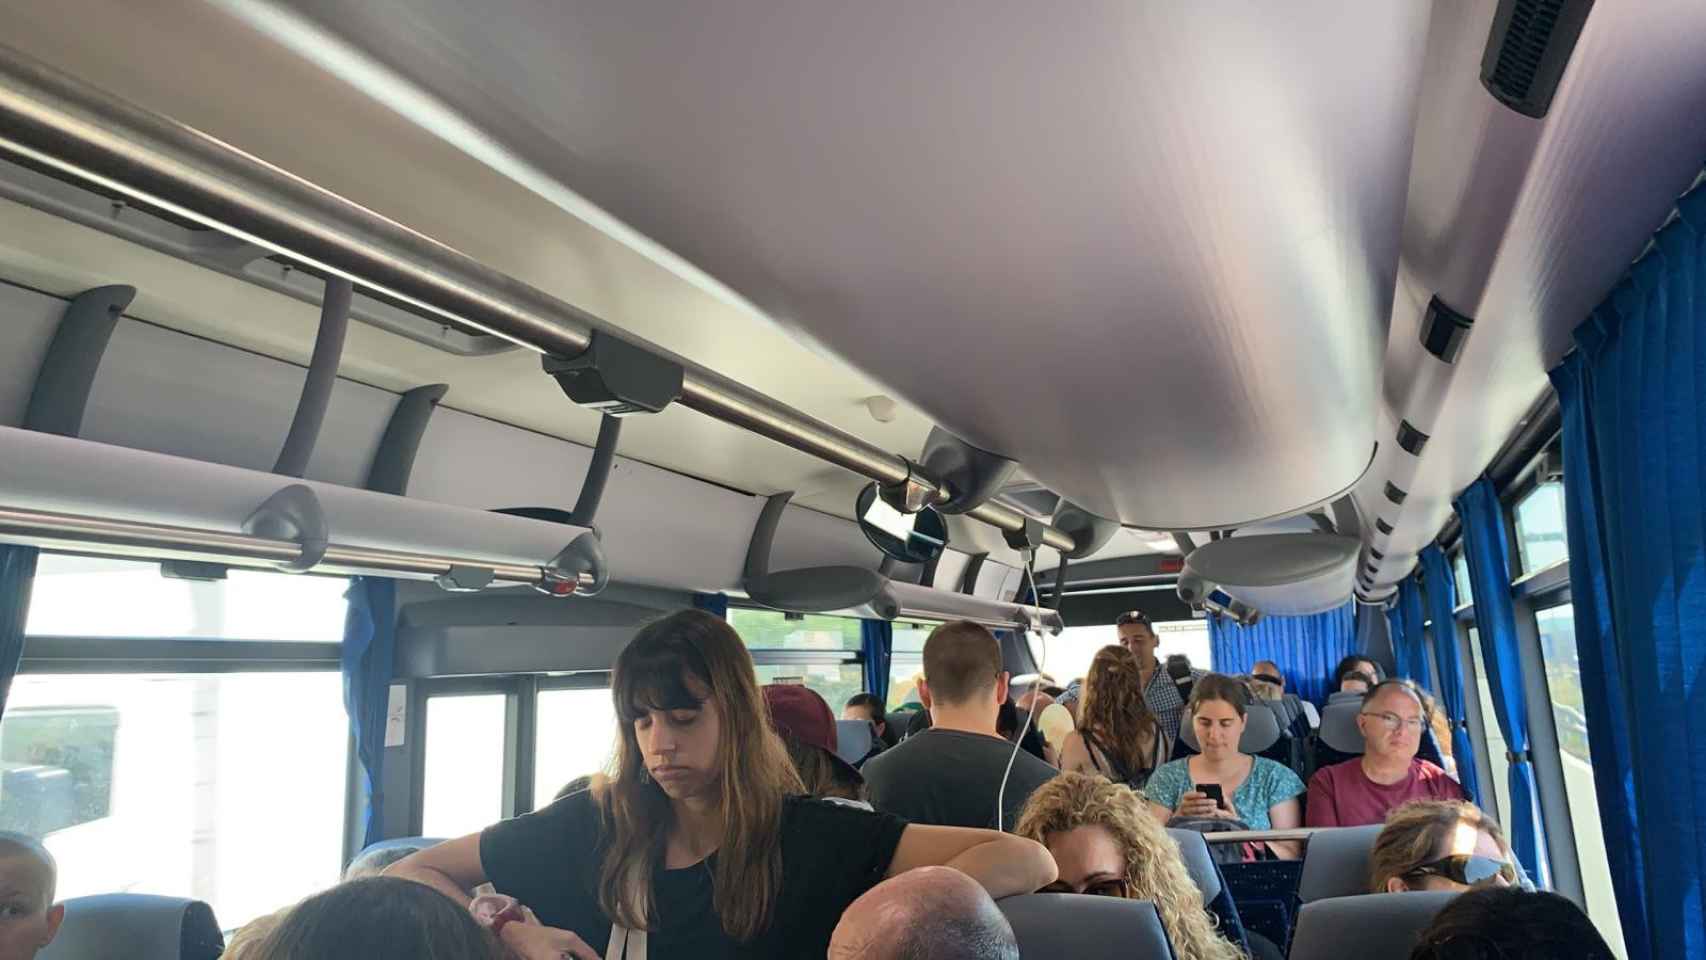 Caos total en uno de los buses de la Meridiana de Barcelona